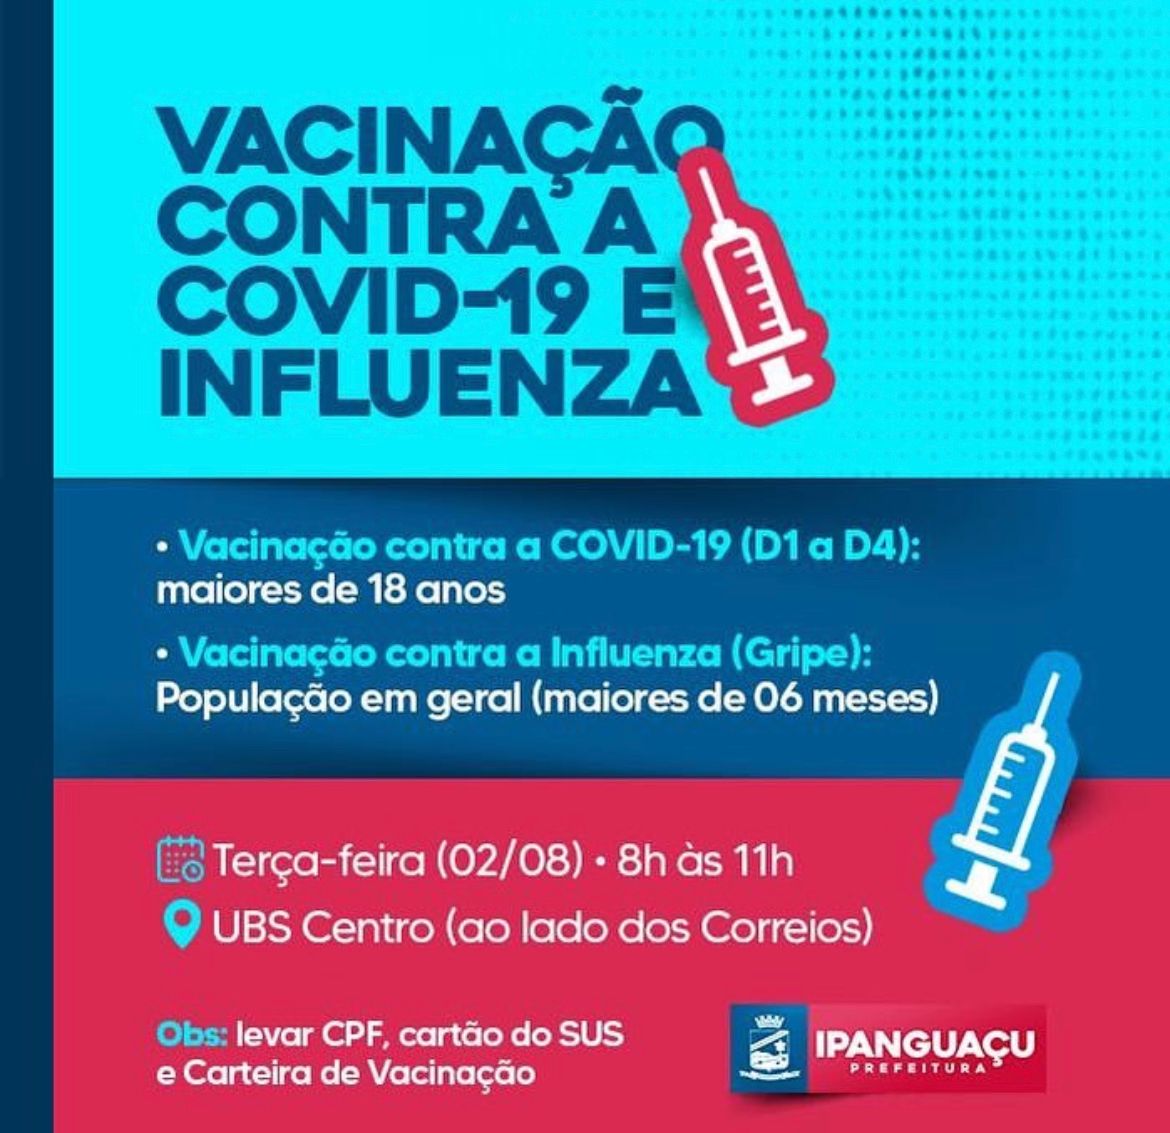 Atenção: Vacinação contra a COVID-19 e Influenza